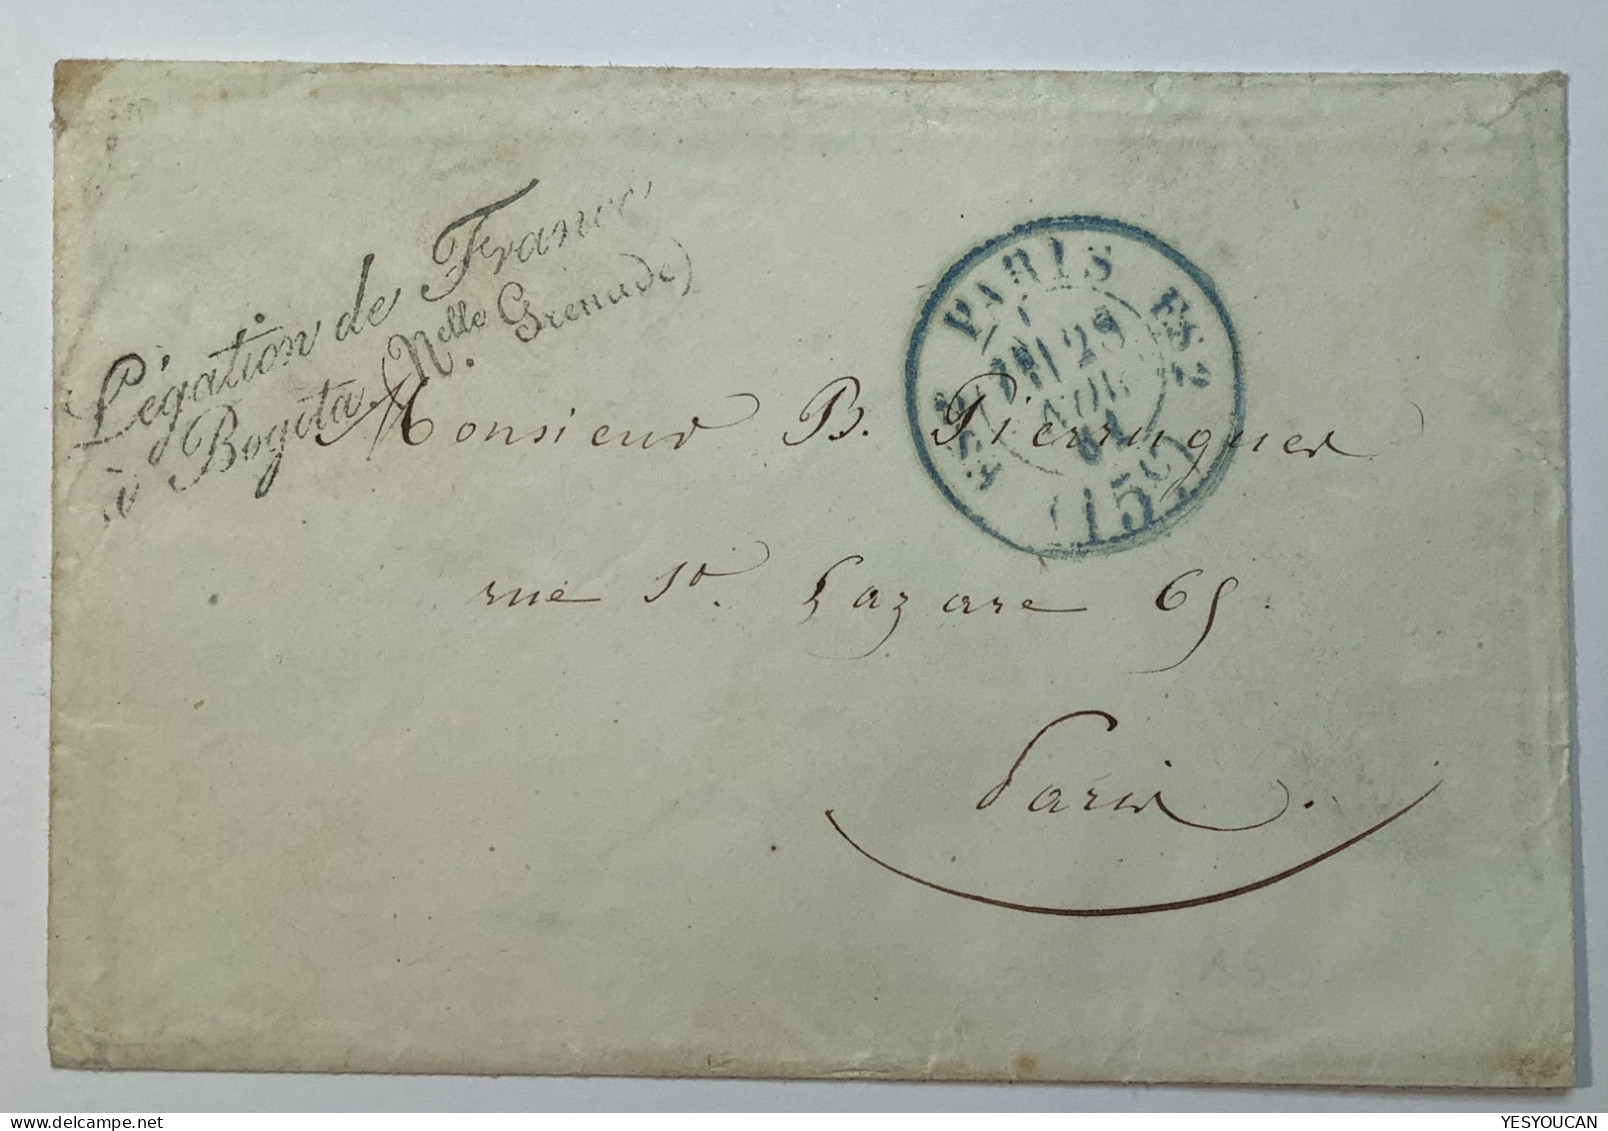 Colombia 1861 Very Rare FRENCH DIPLOMATIC MAIL POUCH BOGOTA "Légation De France" Cover>Paris (lettre Valise Diplomatique - Colombie